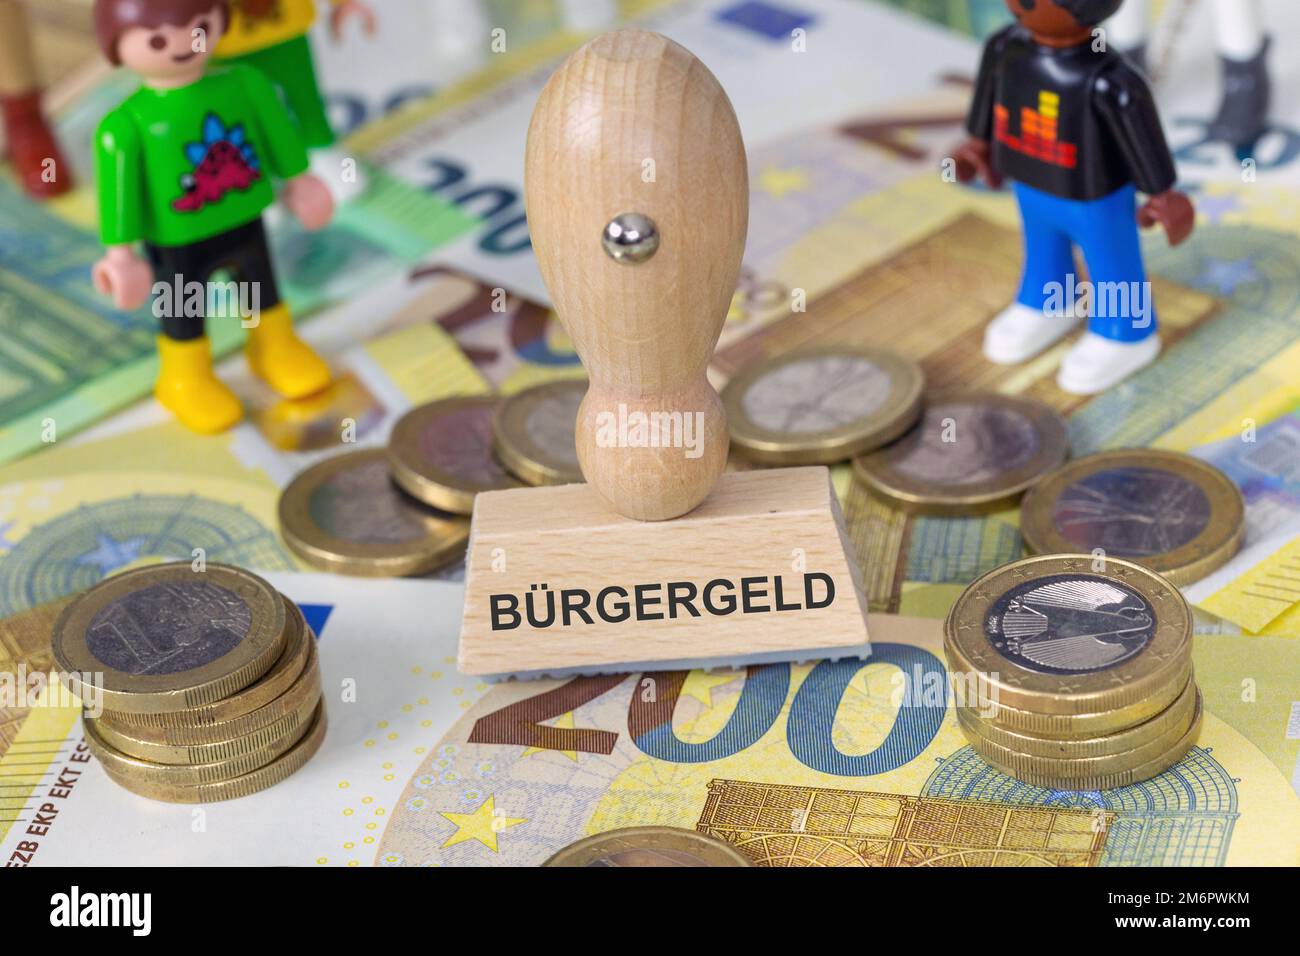 Symbolbild Bürgergeld: Stempel mit der Aufschrift Bürgergeld und Spielzeugfiguren von Playmobil auf Eurobanconoten Foto Stock